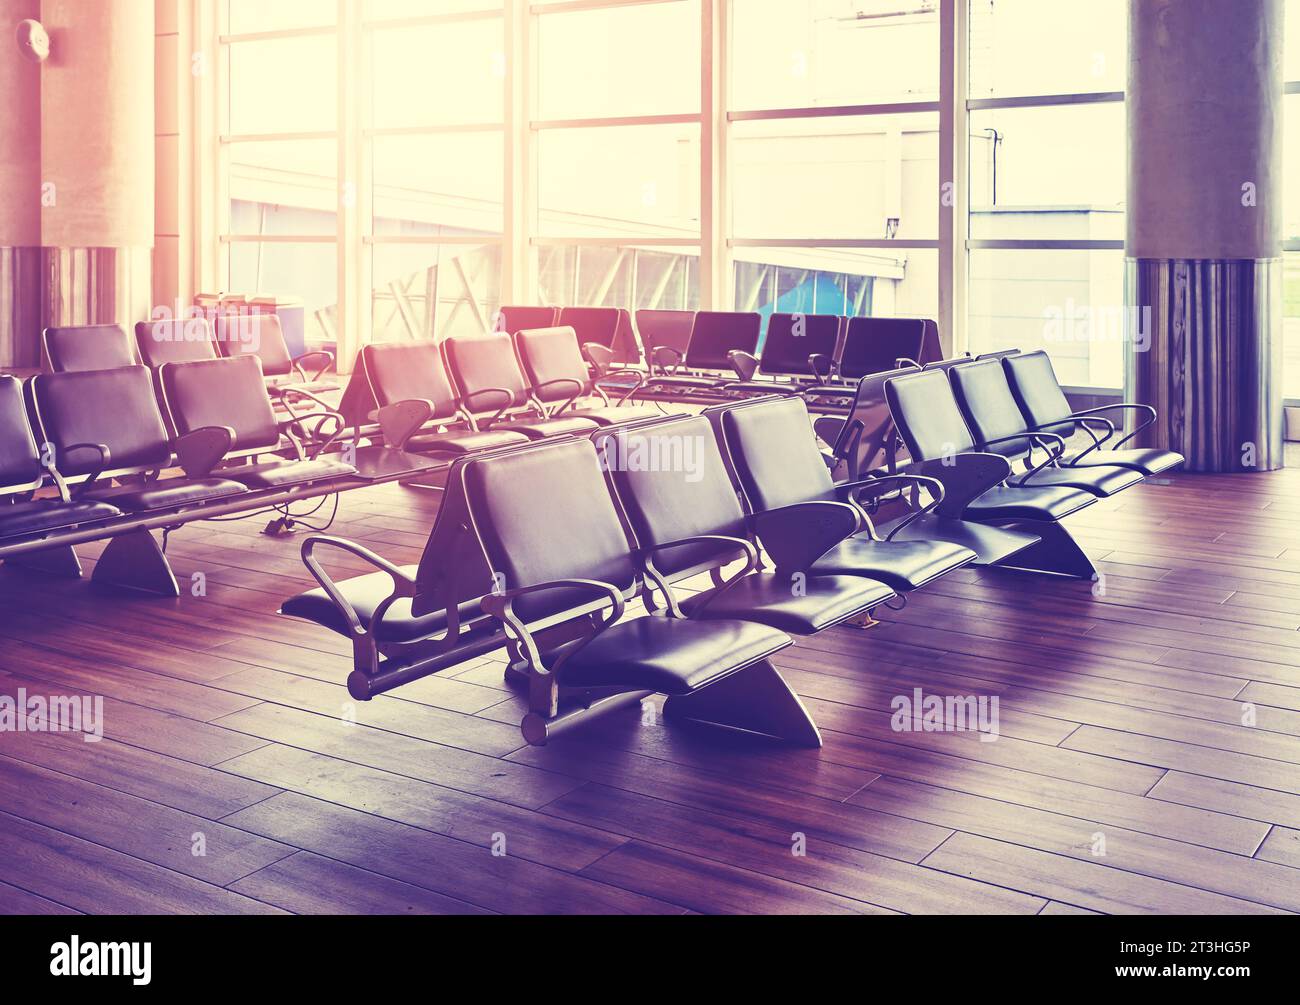 Leere Sitzplätze in einer Abflughalle des Flughafens bei Sonnenuntergang, farblich gefärbtes Bild, selektiver Fokus. Stockfoto